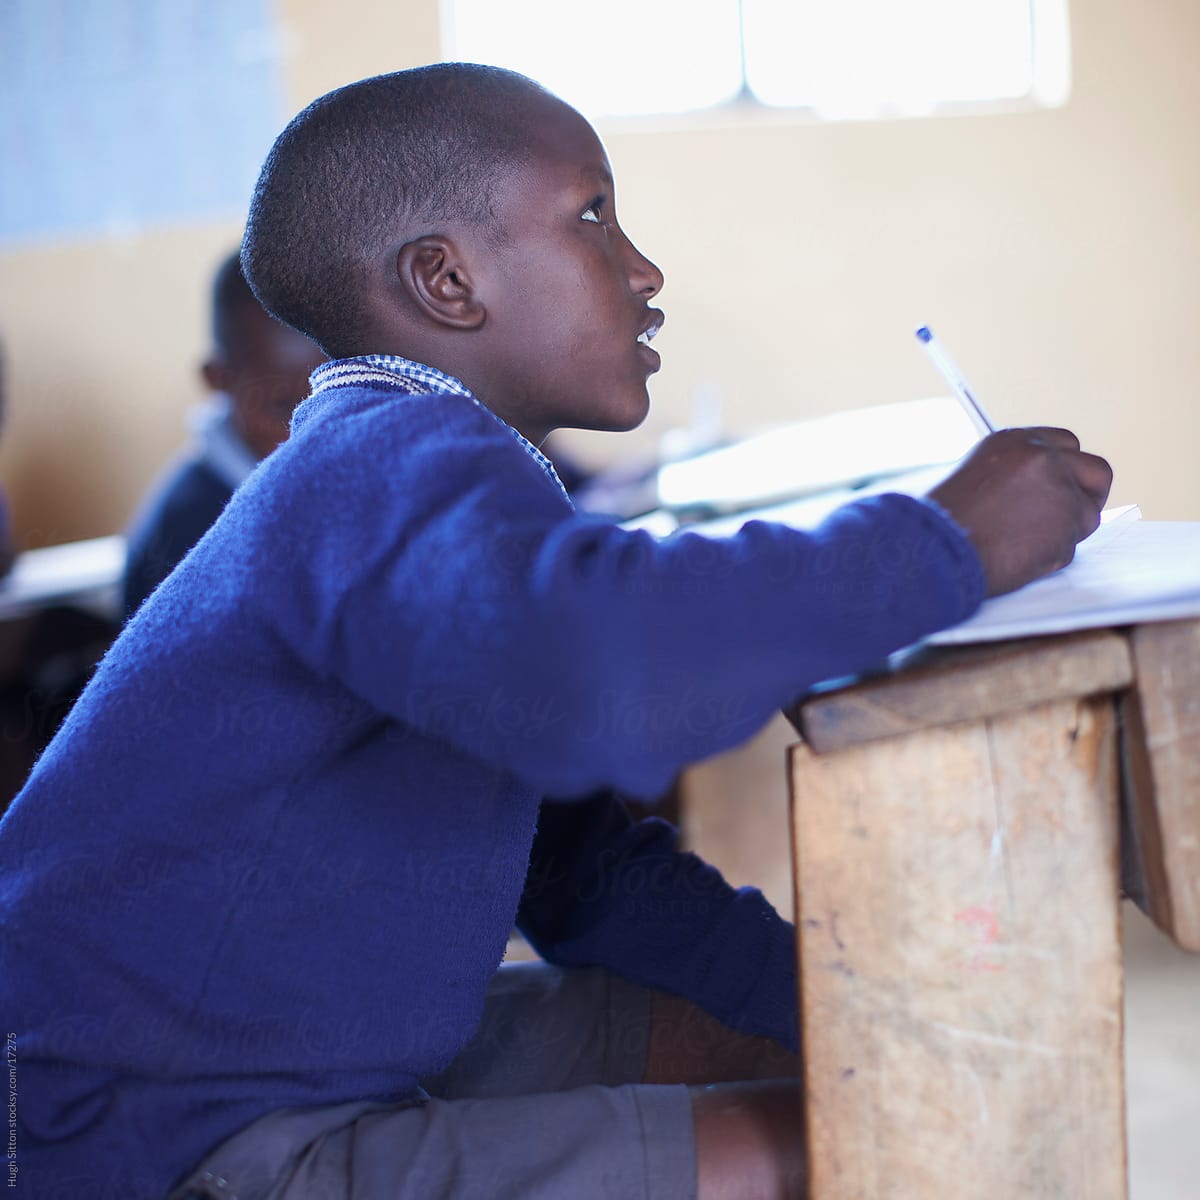 School children in busy classroom. Kenya Africa.